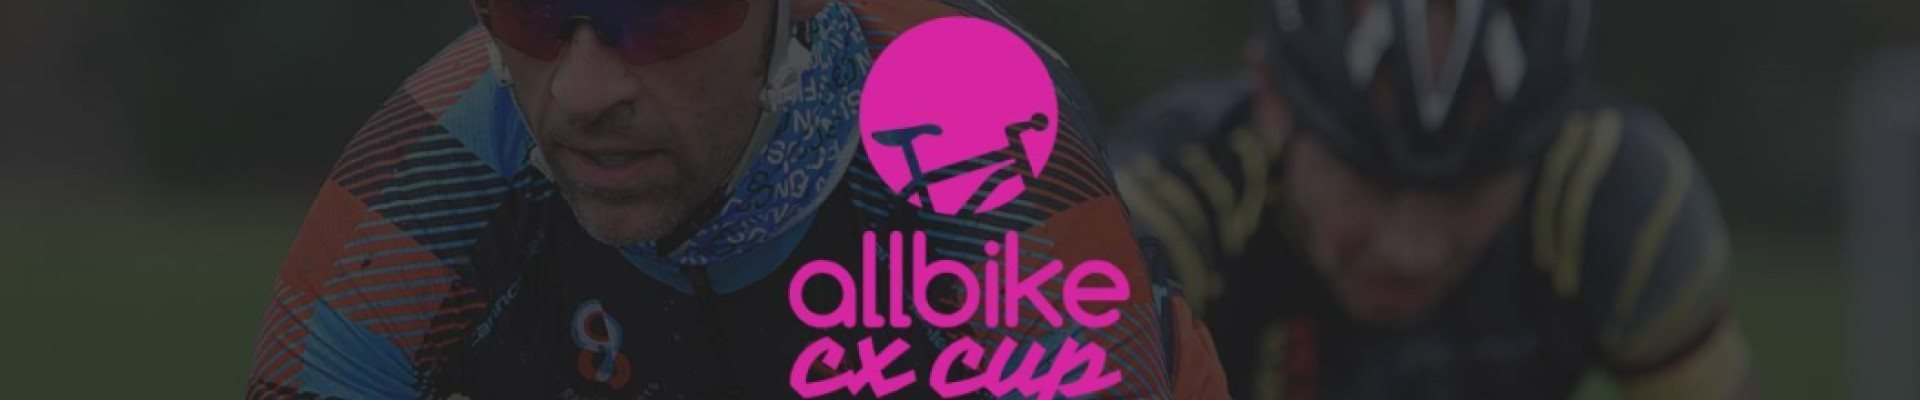 Allbike CX cup 20/21 #2 Stoholm - Aflyst